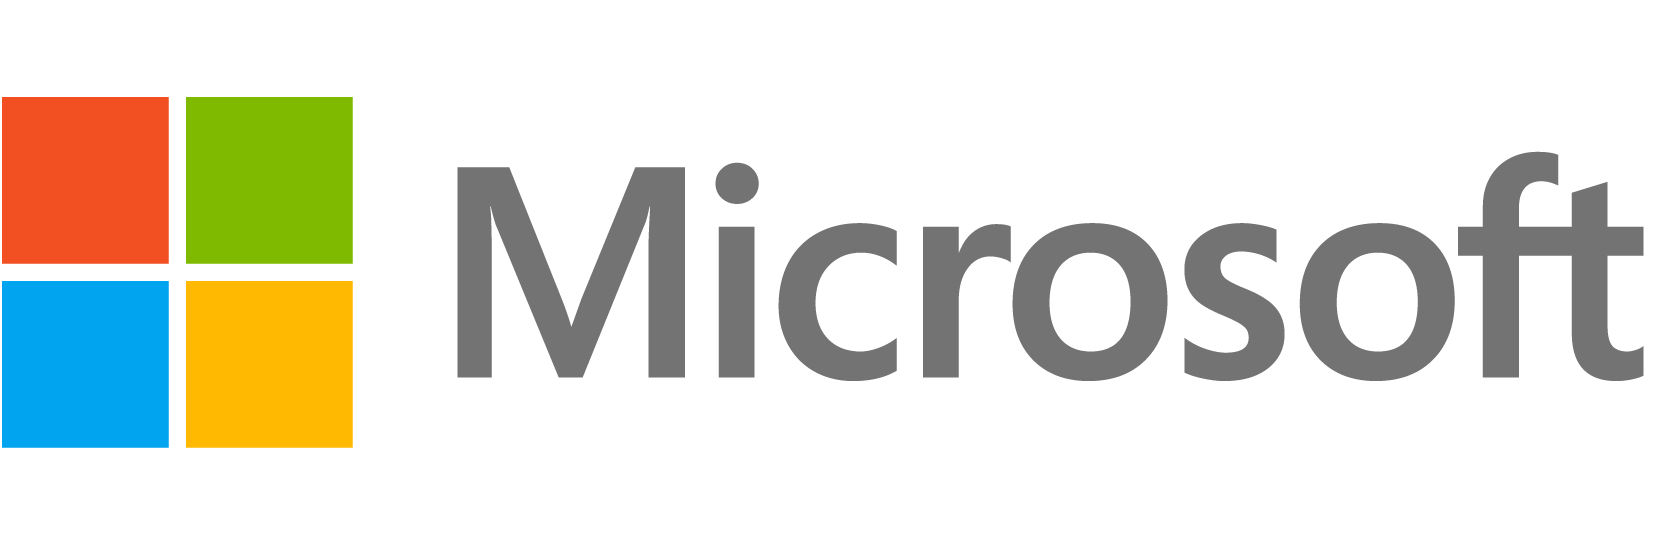 Microsoft logo - Tech Patrol